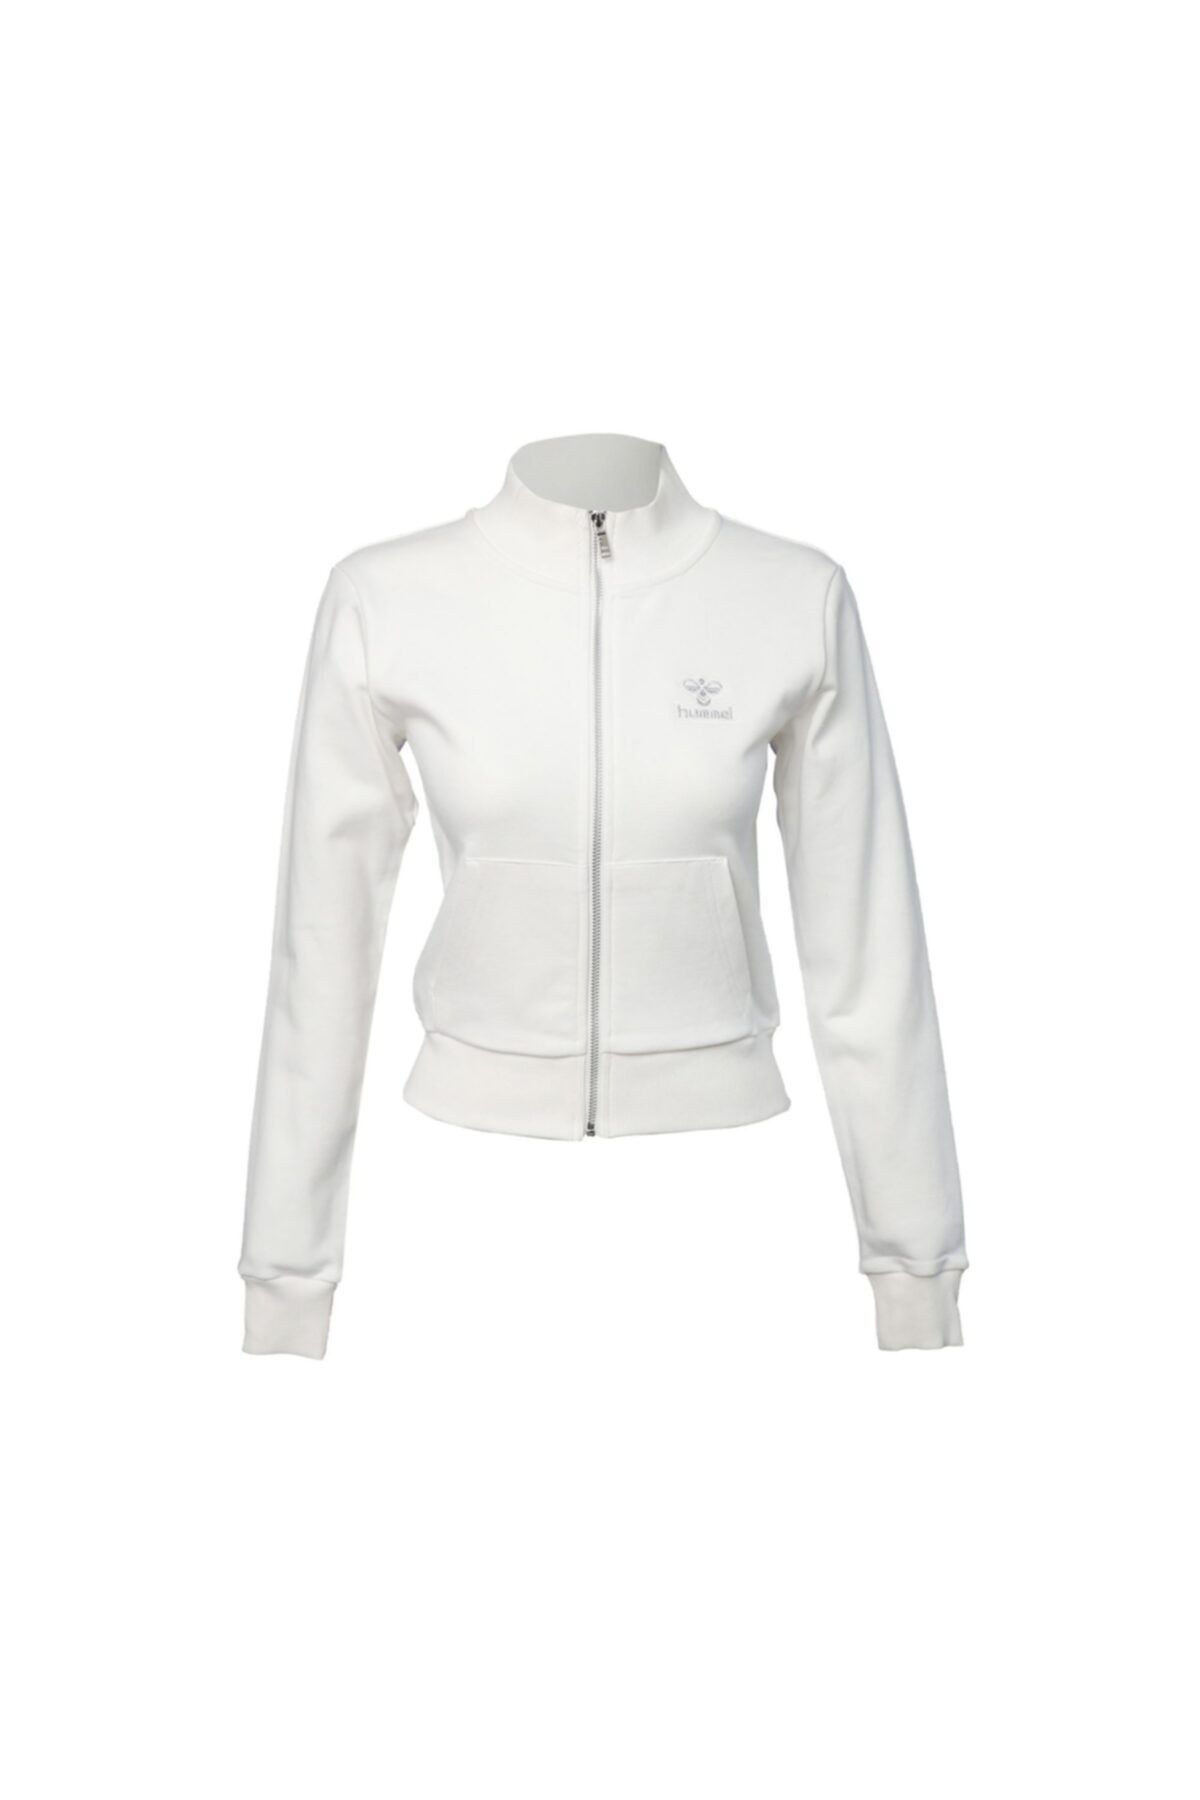 hummel Hmlgaida Zip Jacket Kadın Günlük Ceket 921392-9003 Beyaz